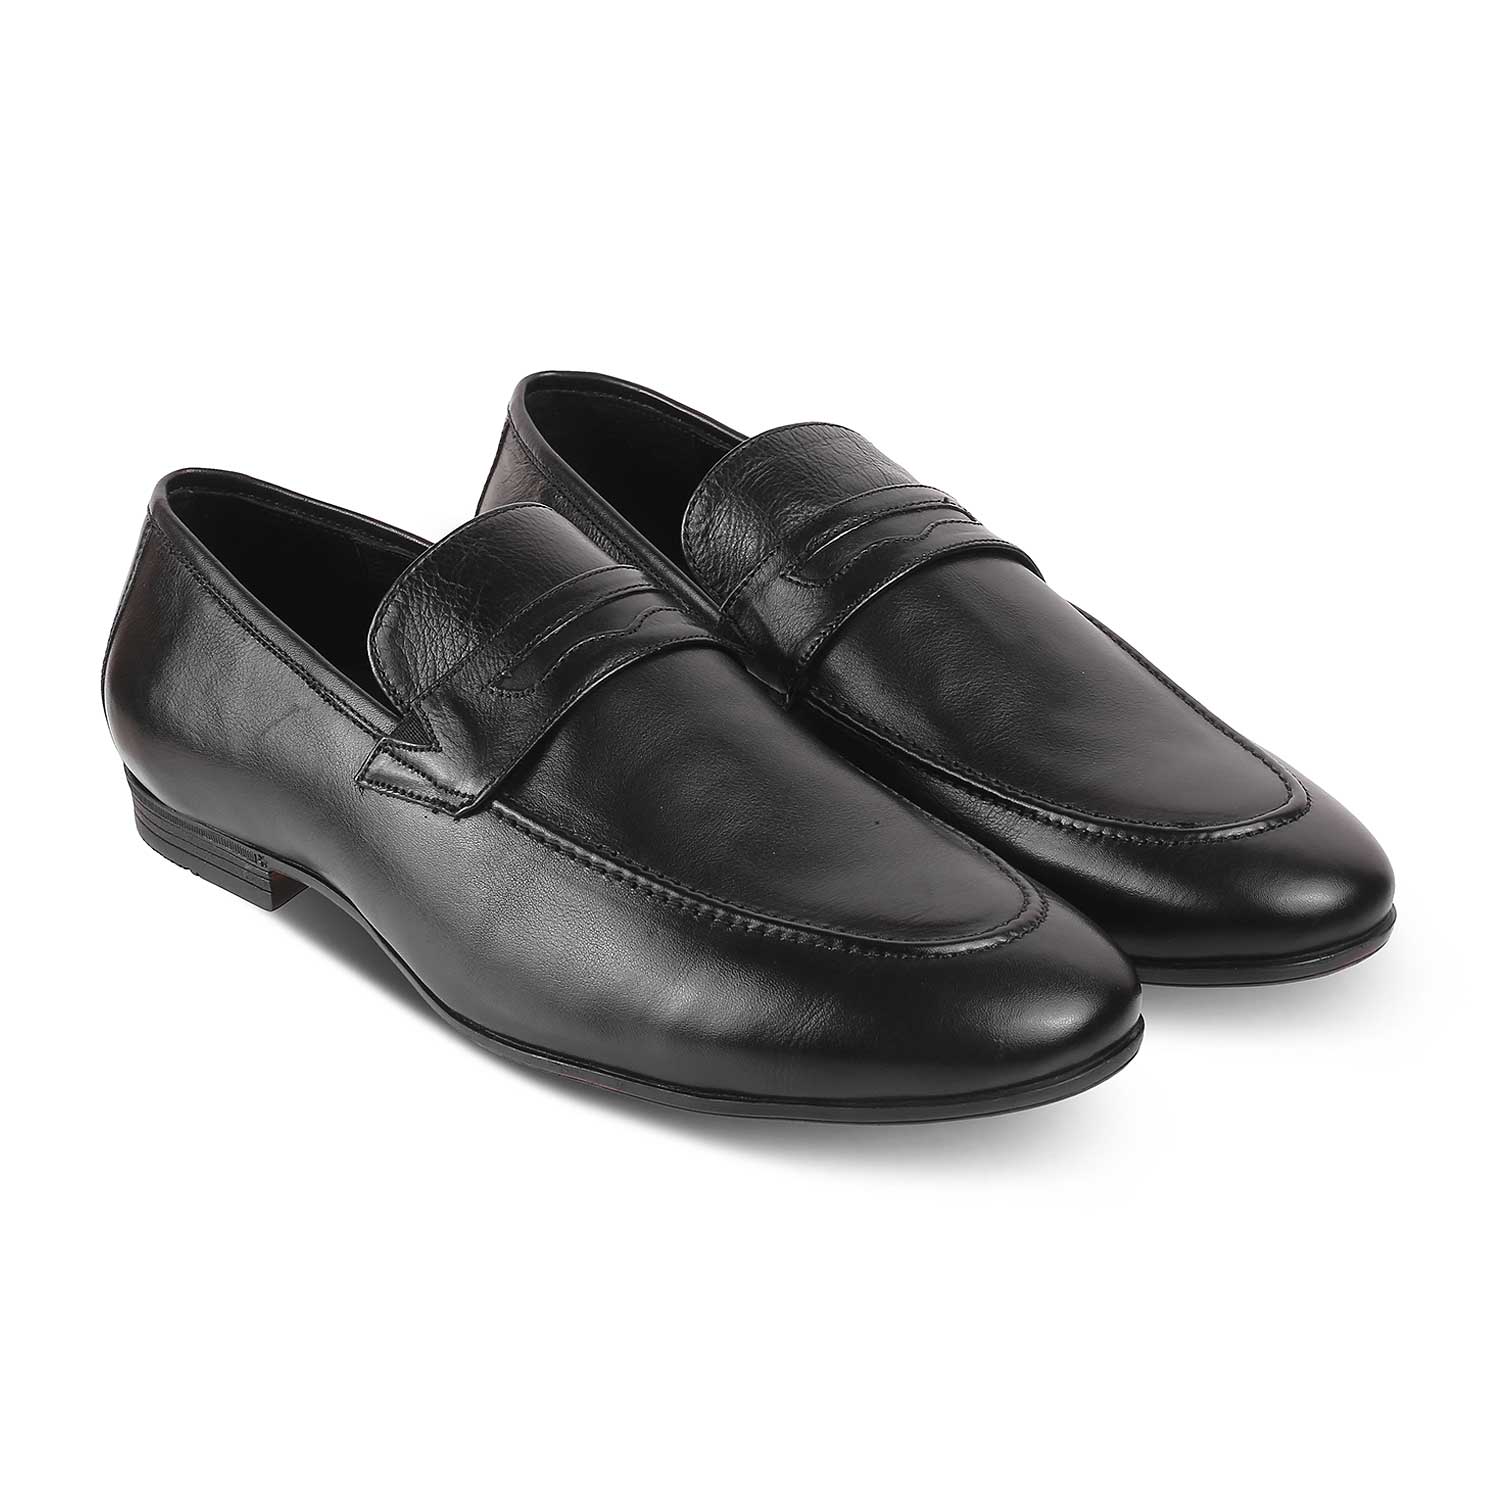 Penloaf Black Men's Leather Loafers Online at Tresmode.com